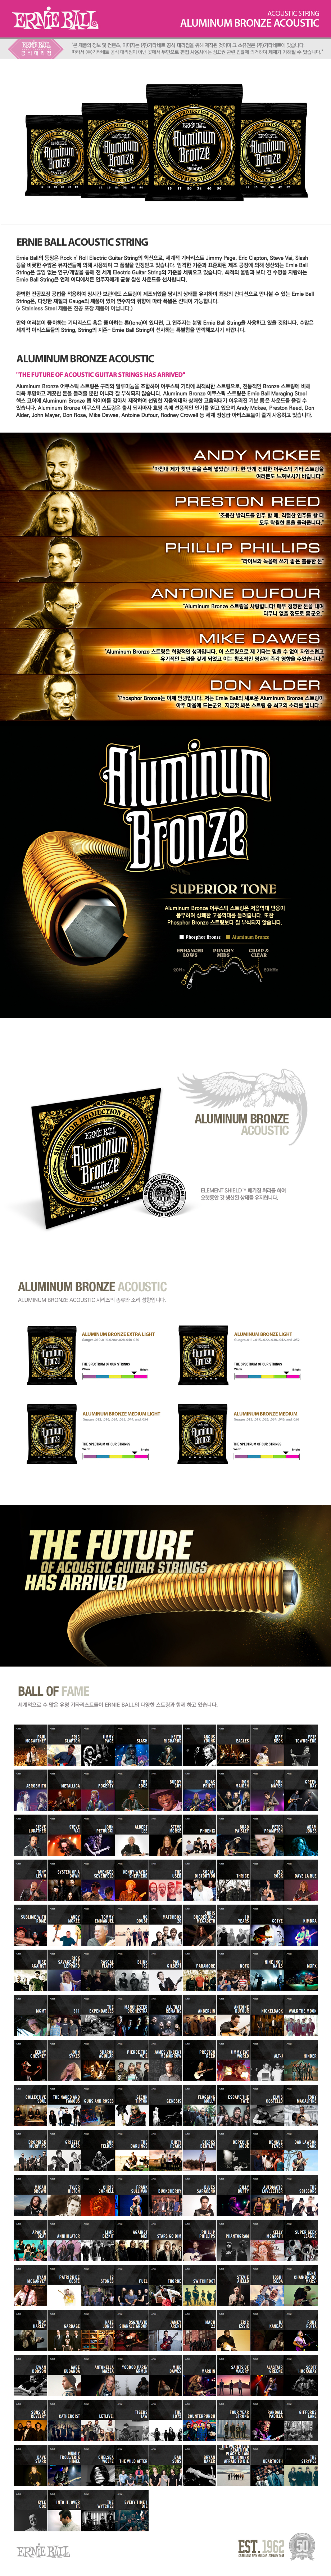 aluminum_bronze_acoustic_102035.jpg